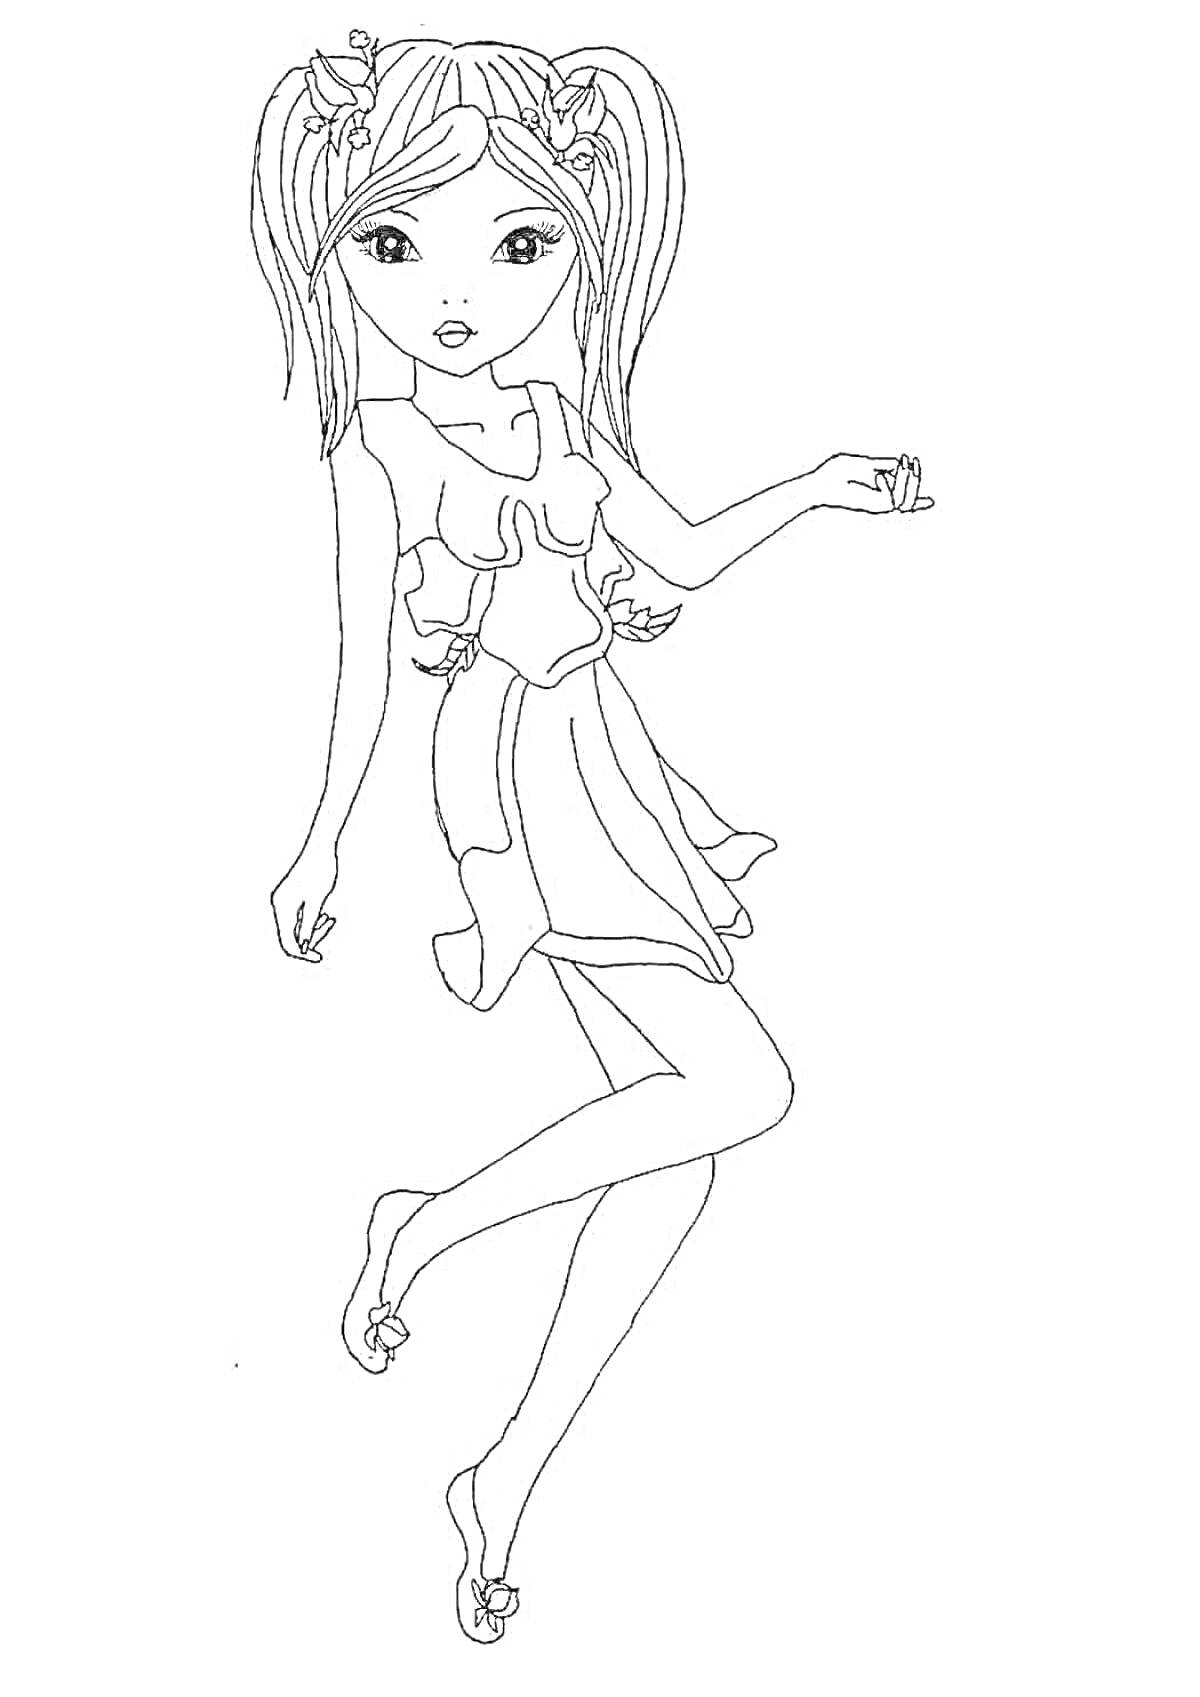 Раскраска Девушка с длинными волосами, в платье, босиком, руки в стороны